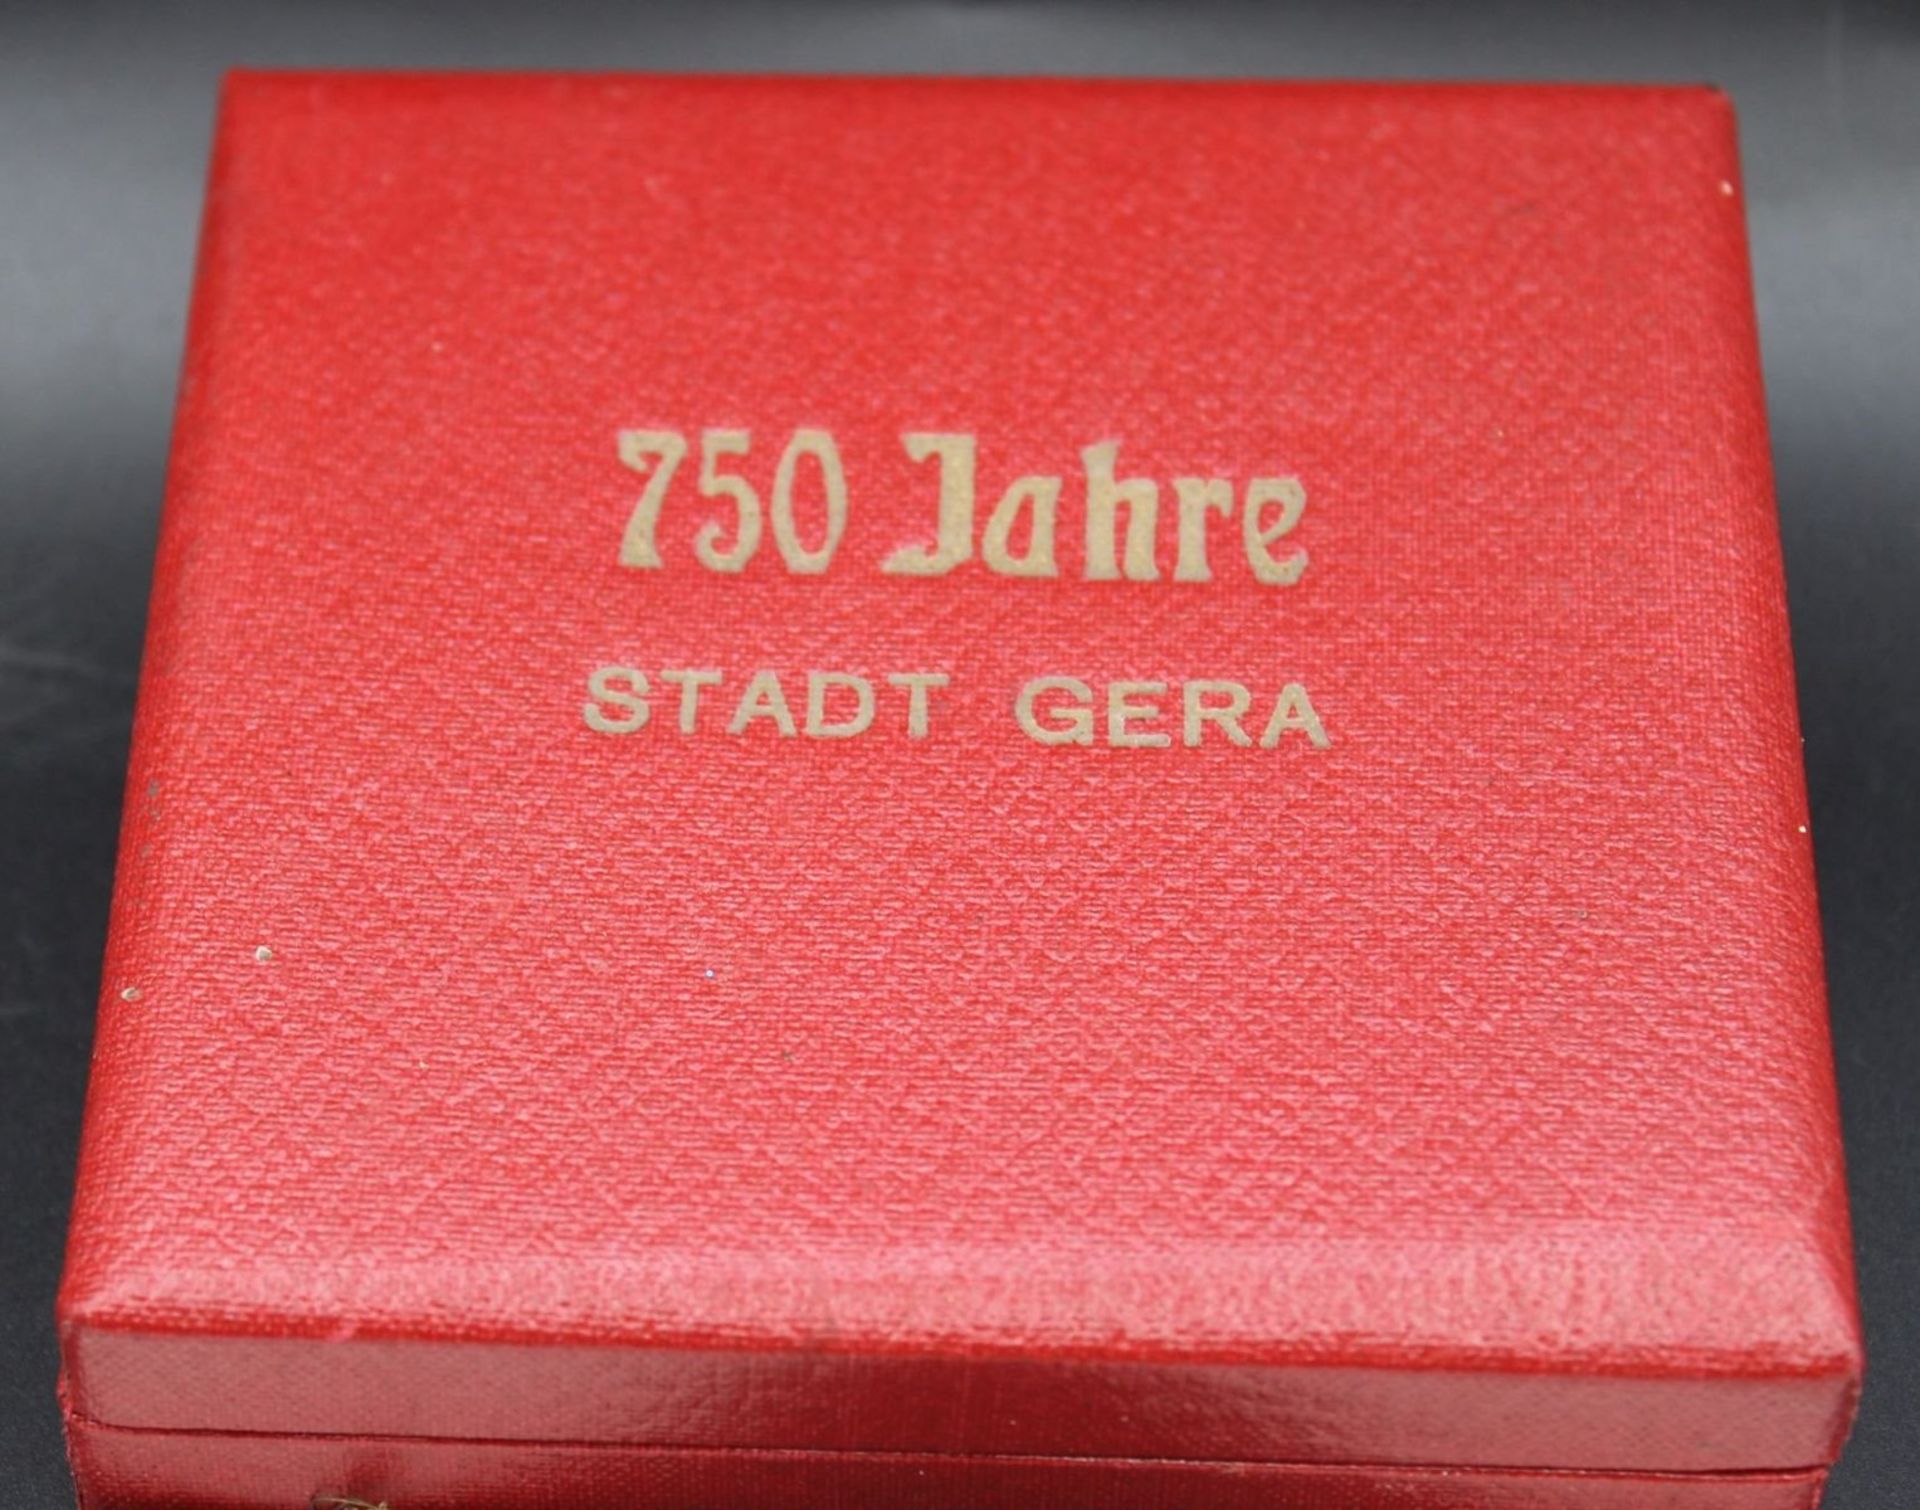 6x div. KPM-Plaketten und 1x Meissen "750 Jahre Stadt Gera" in Etui, Größte D-9,5cm. - Image 4 of 4